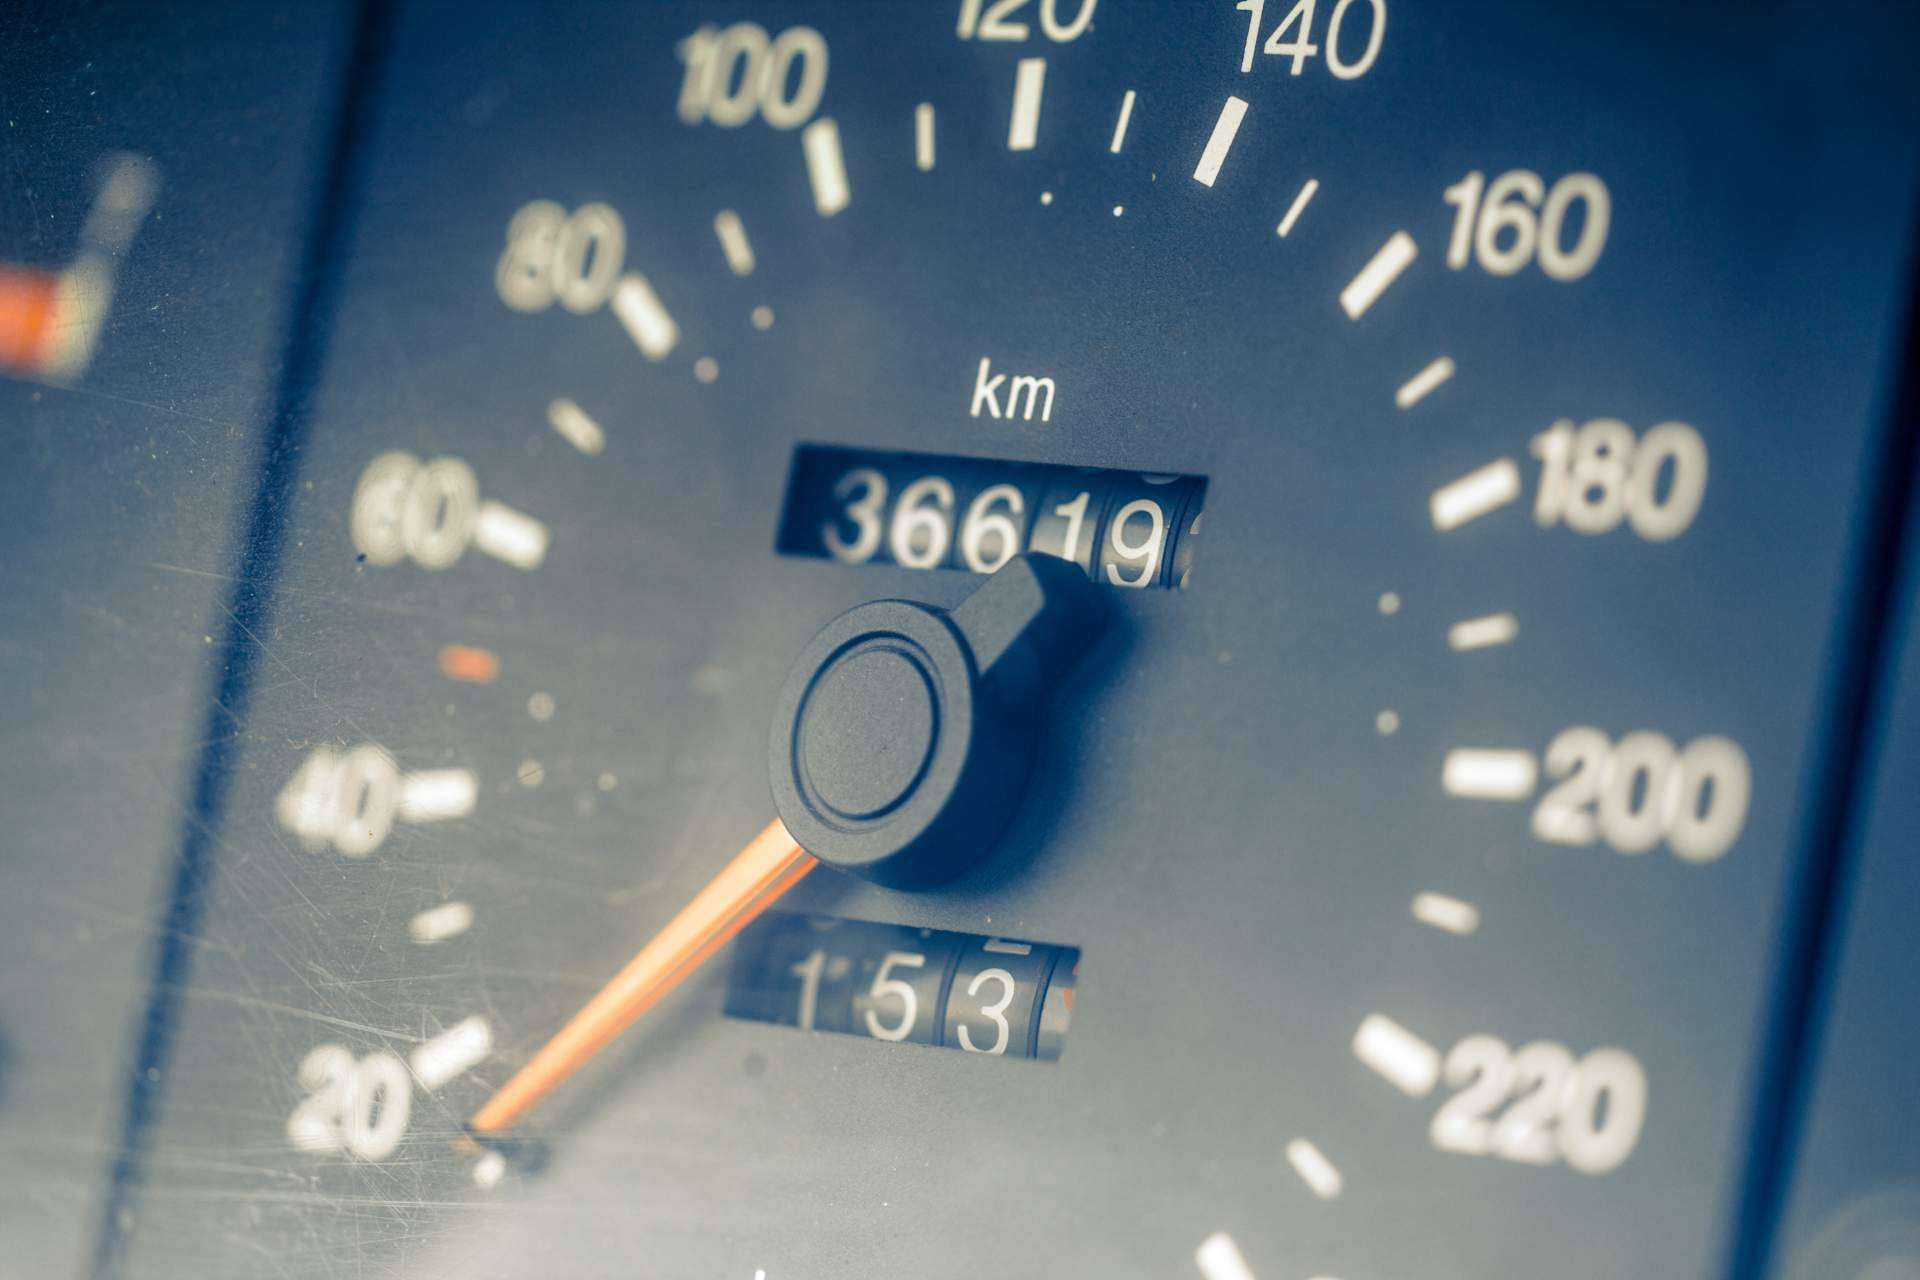 ¿Cómo descubrir si se ha manipulado el kilometraje de un coche?, por Inforautos